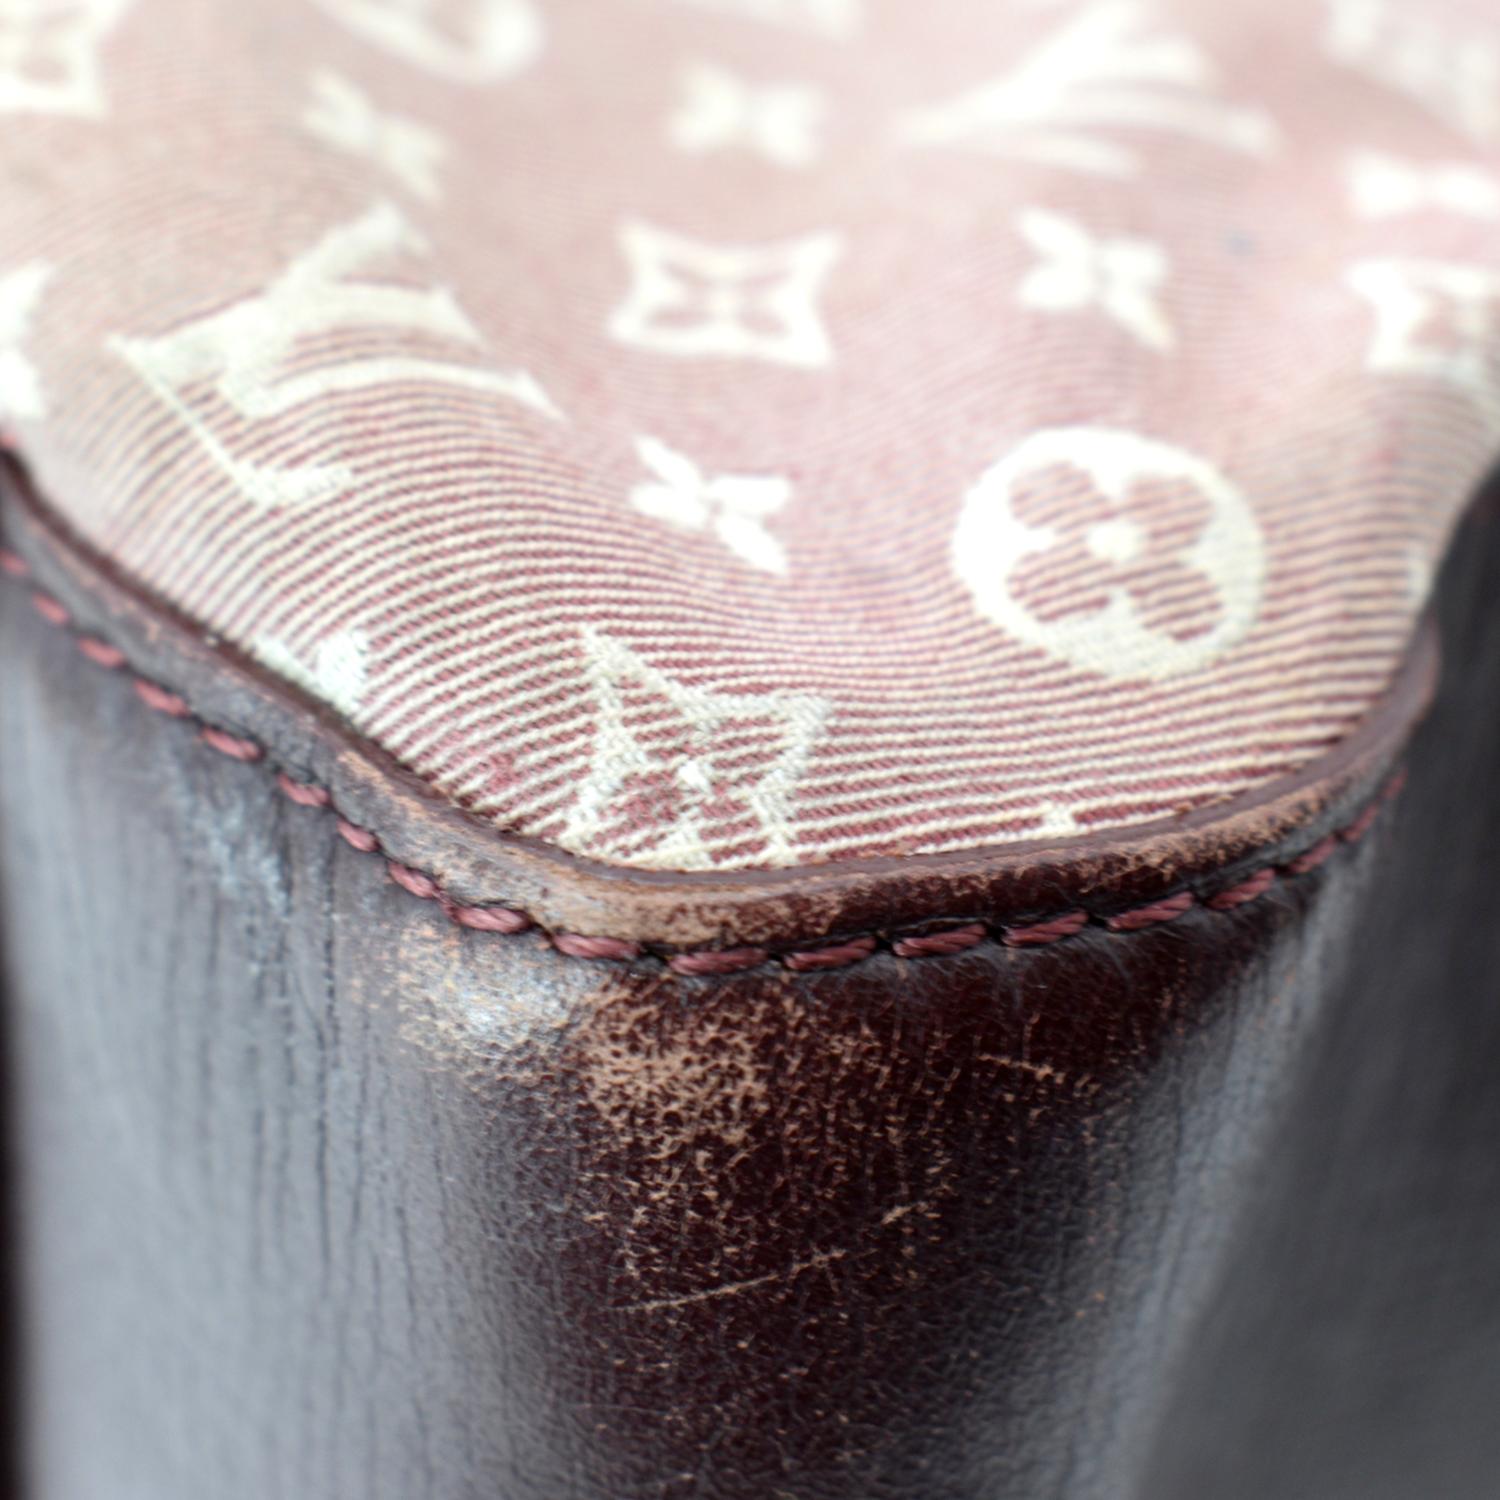 Brown Louis Vuitton Monogram Idylle Fantaisie Hobo Bag – Designer Revival